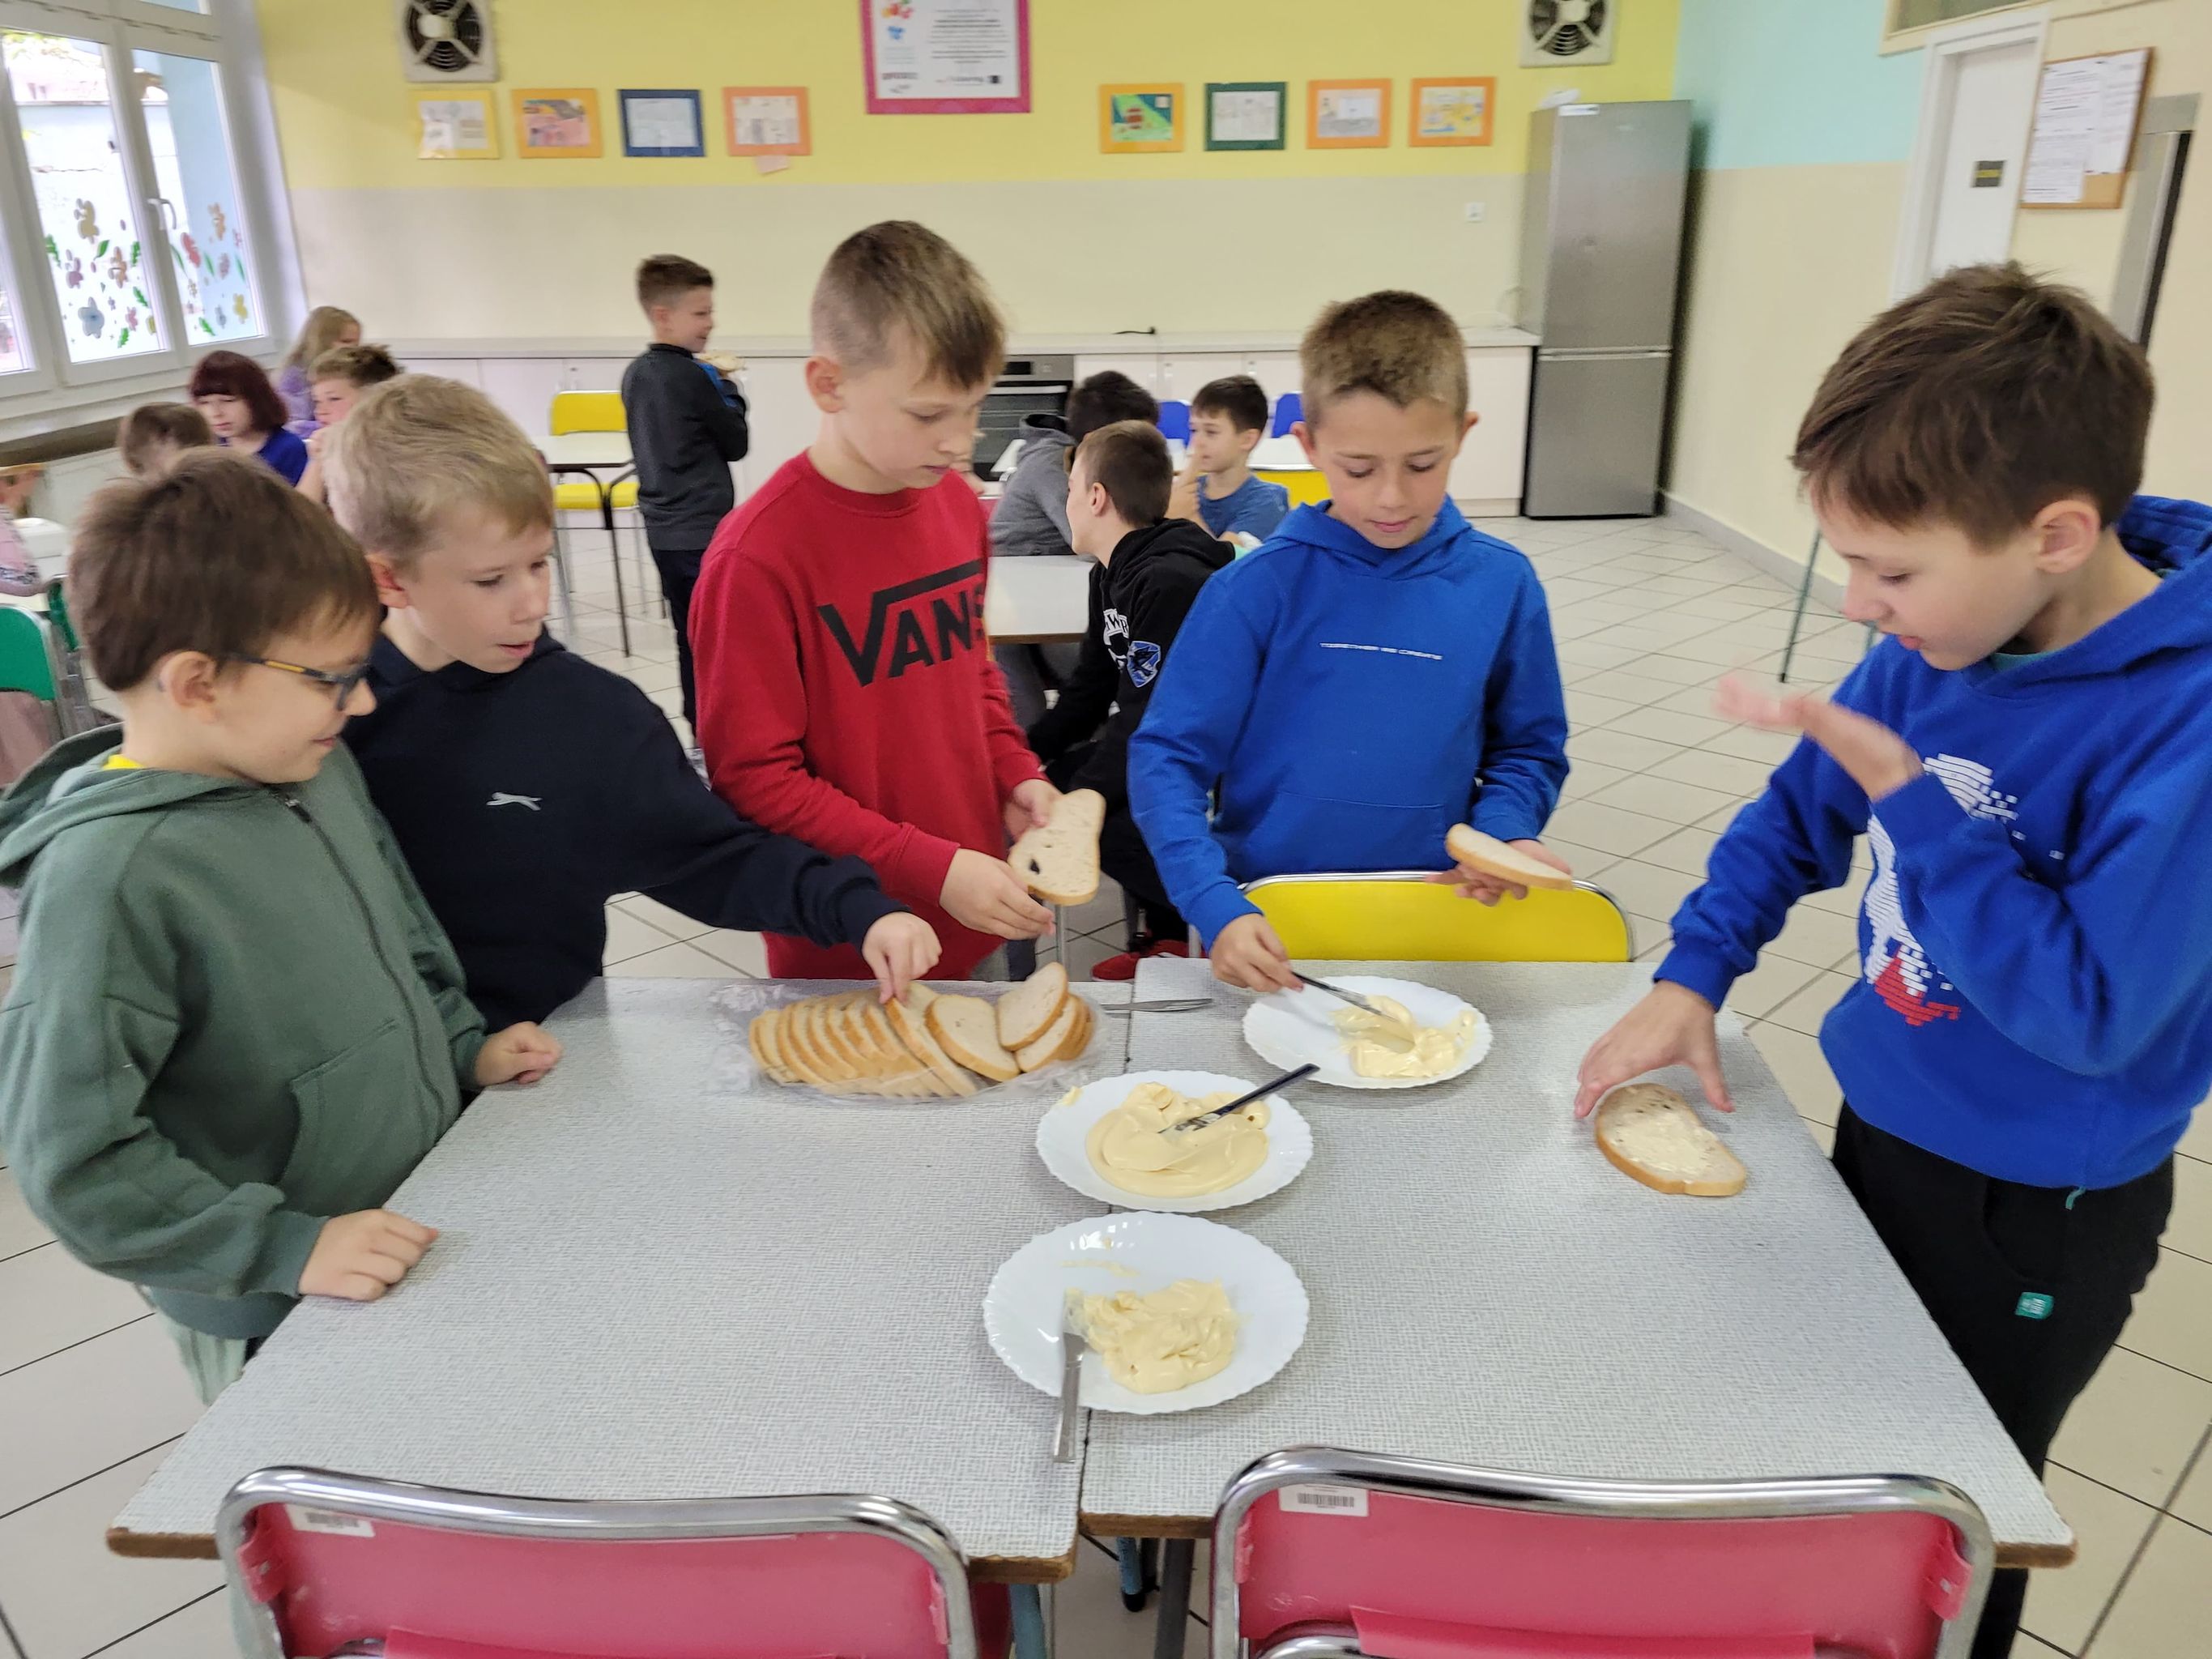 uczniowie jedzą kanapki z samodzielnie ubitym masłem